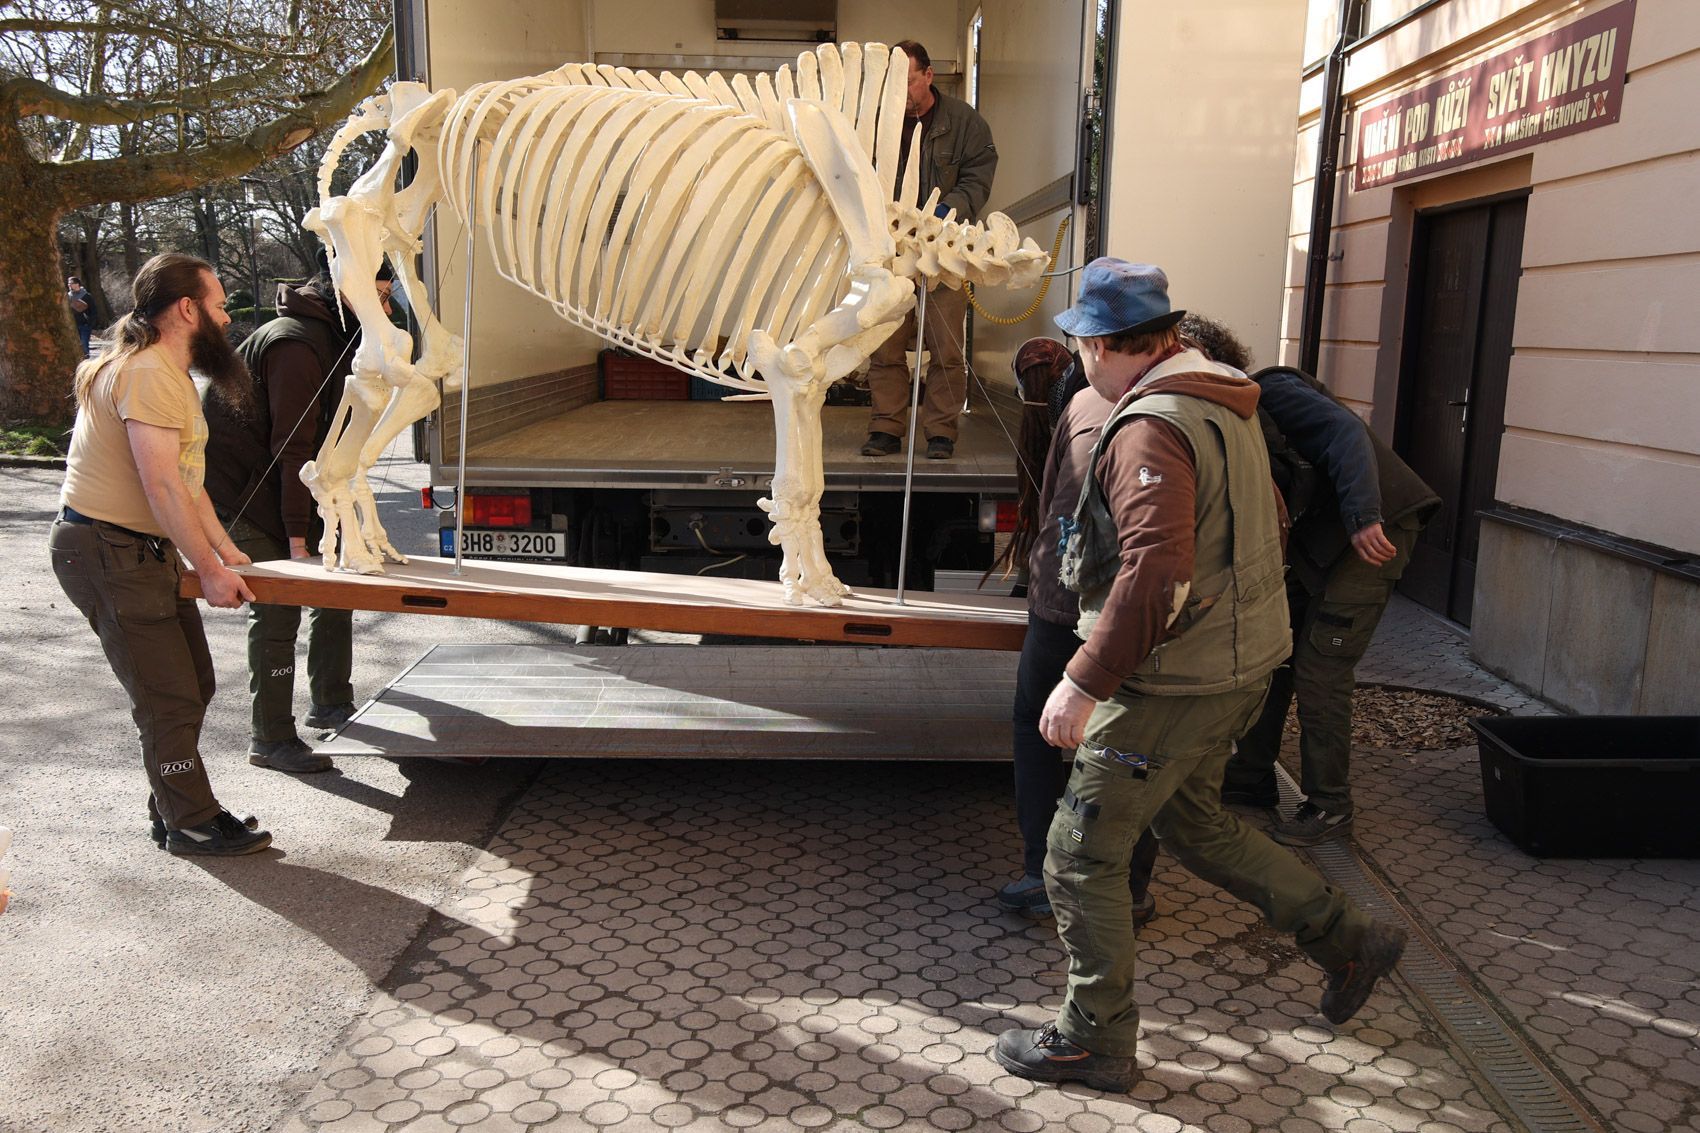 stěhování kostry nosorožce Sudána do Národního muzea